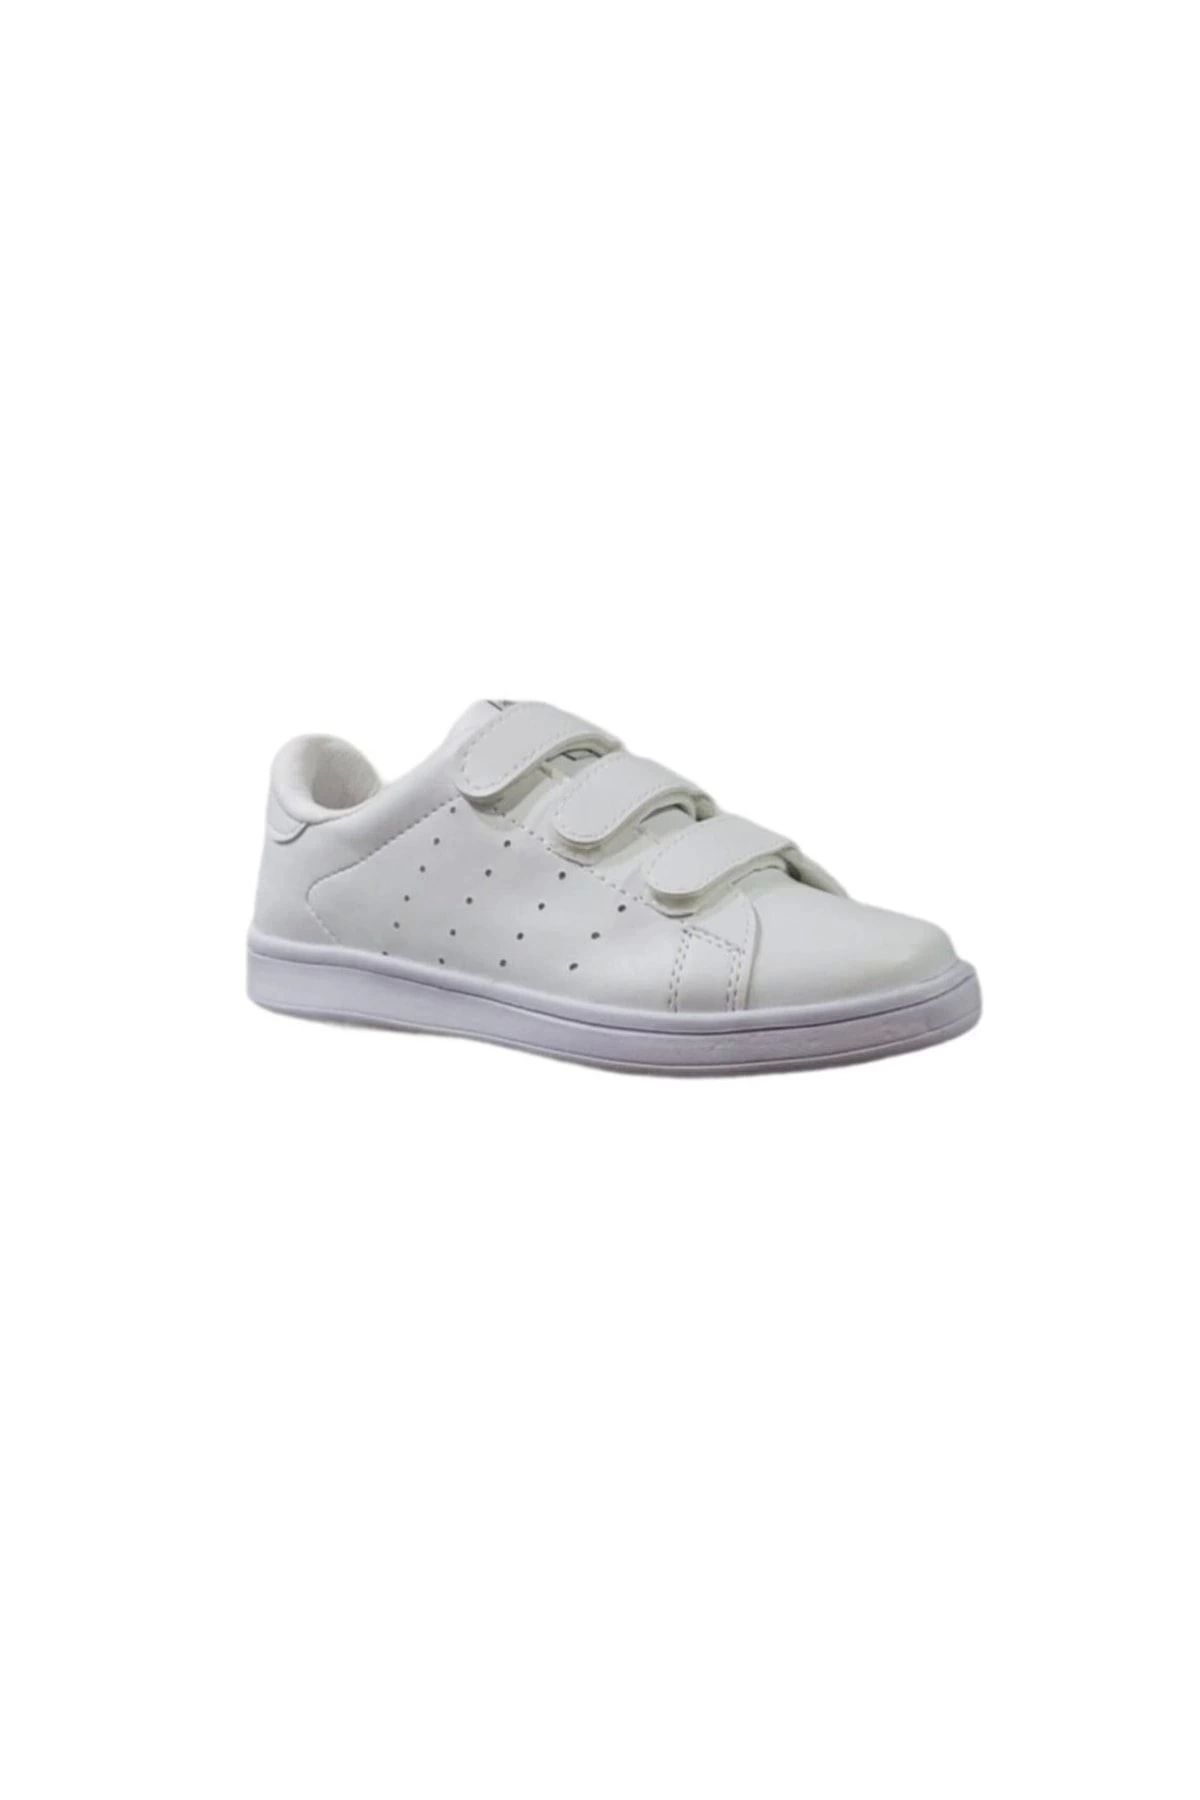 Venuma Beyaz Shoes Unisex Ultra Hafif Cırtlı Beyaz Günlük Yürüyüş Spor Ayakkabı